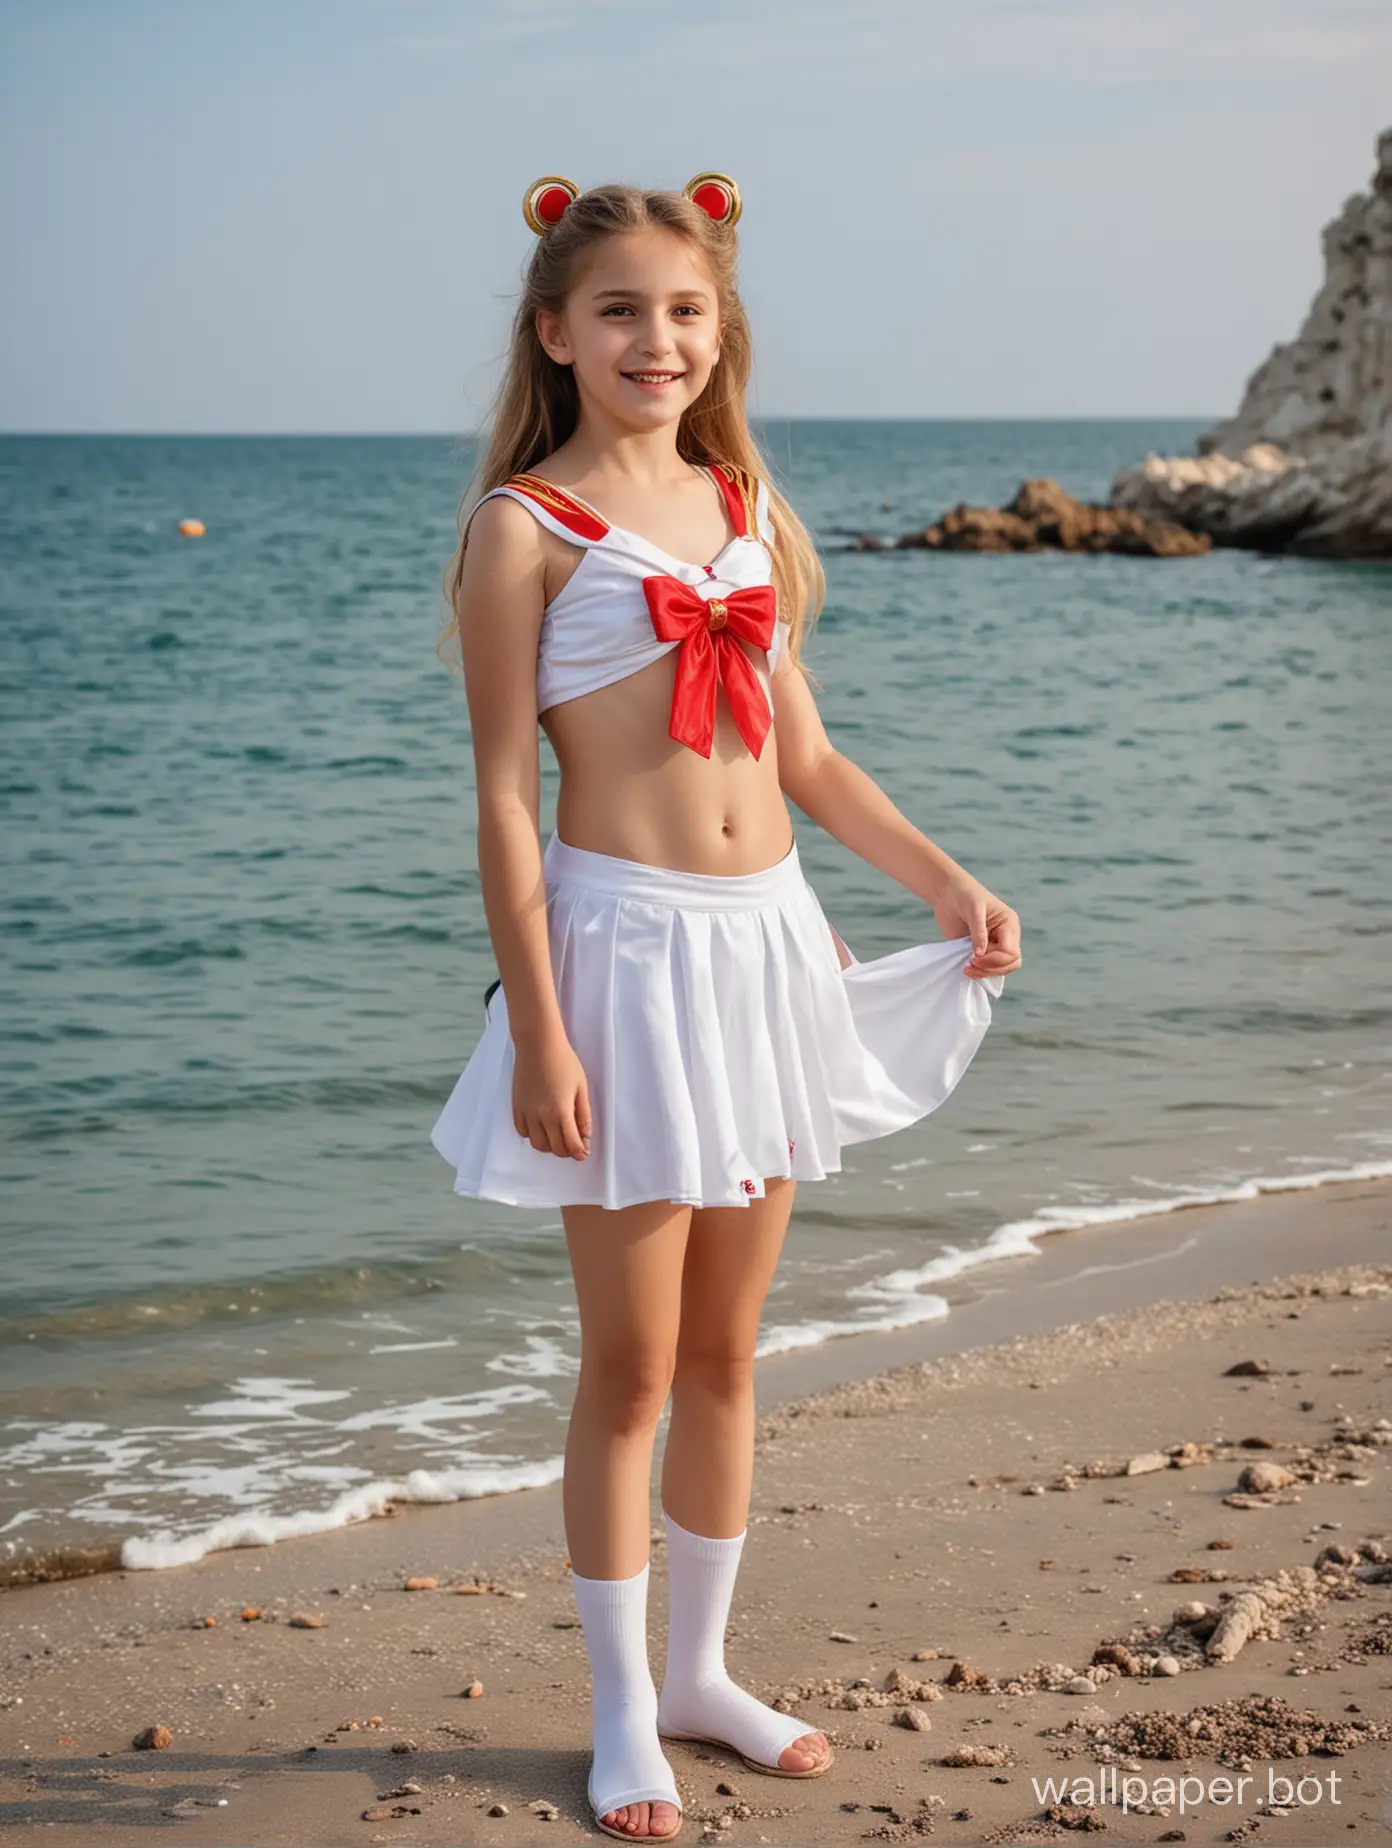 Красивая девочка 10 лет в Крыму у моря в костюме Сейлор Мун, в полный рост, дети разного возраста вокруг, динамичные позы, позирует, улыбка, вид сбоку, топлес